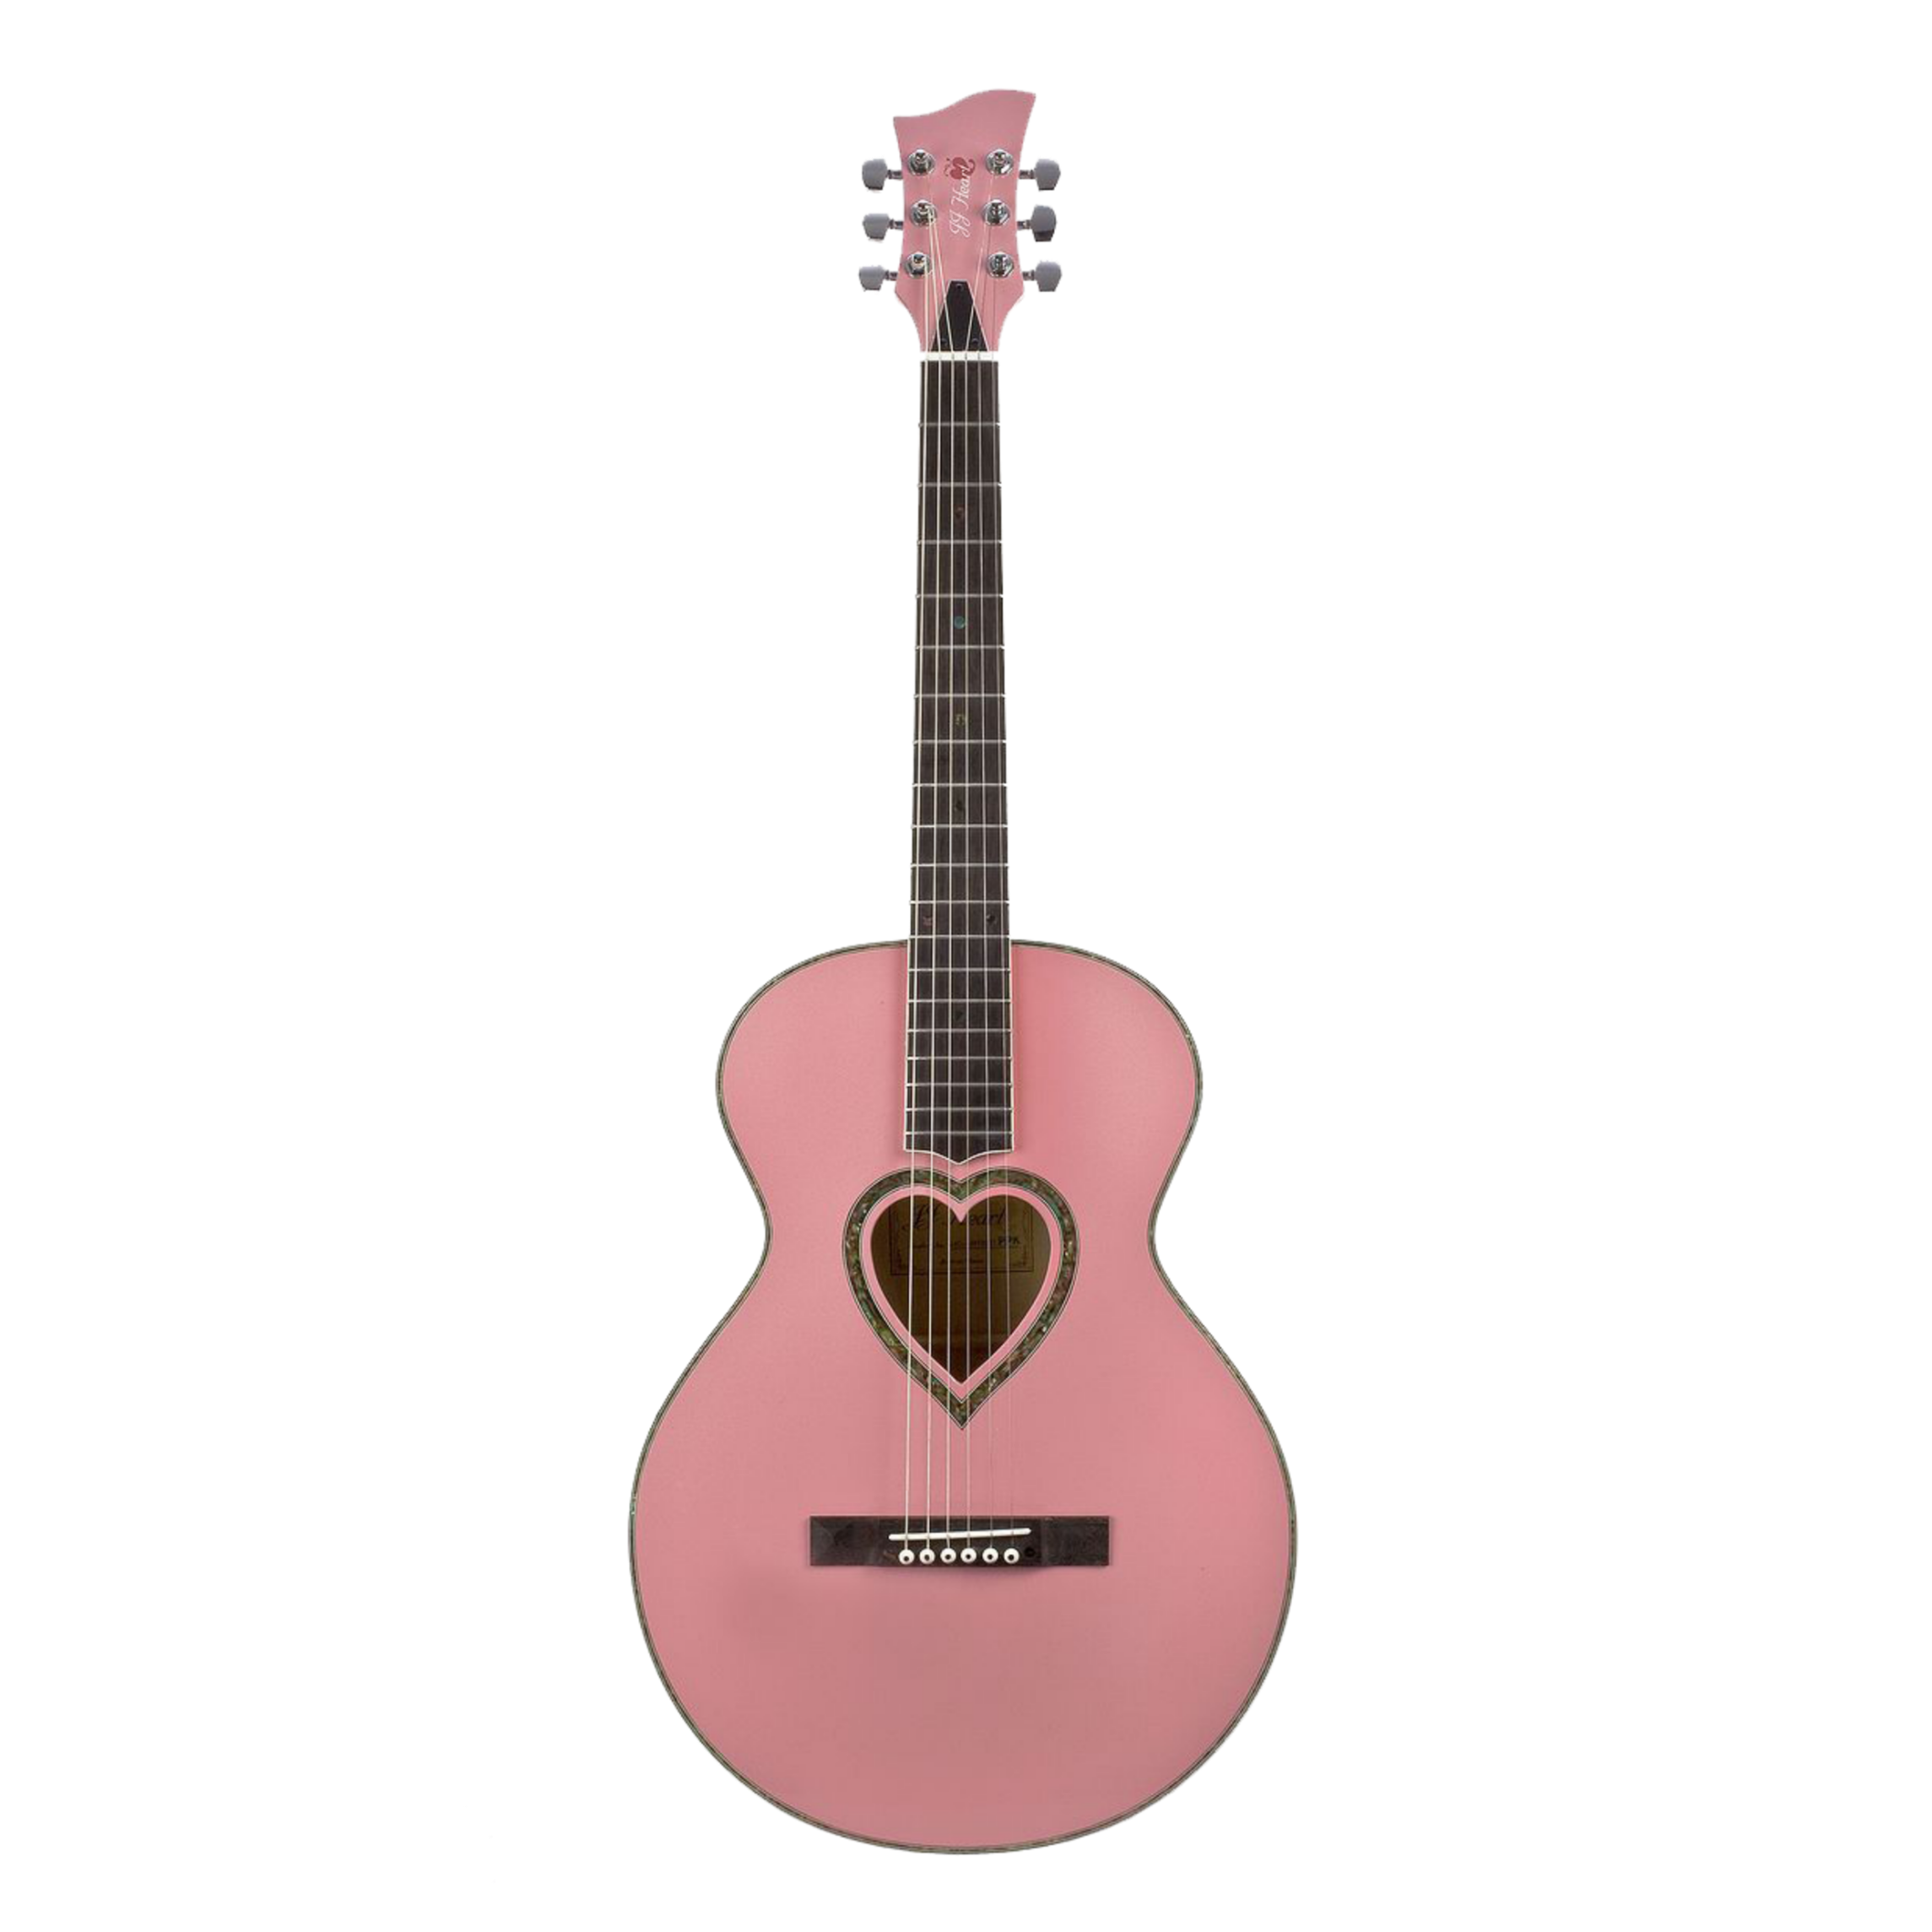 Акустическая гитара Fender розовая. Гитара Jaumbo 410. SN lx25476 гитара. Маша хочет купить гитару за 210 монет